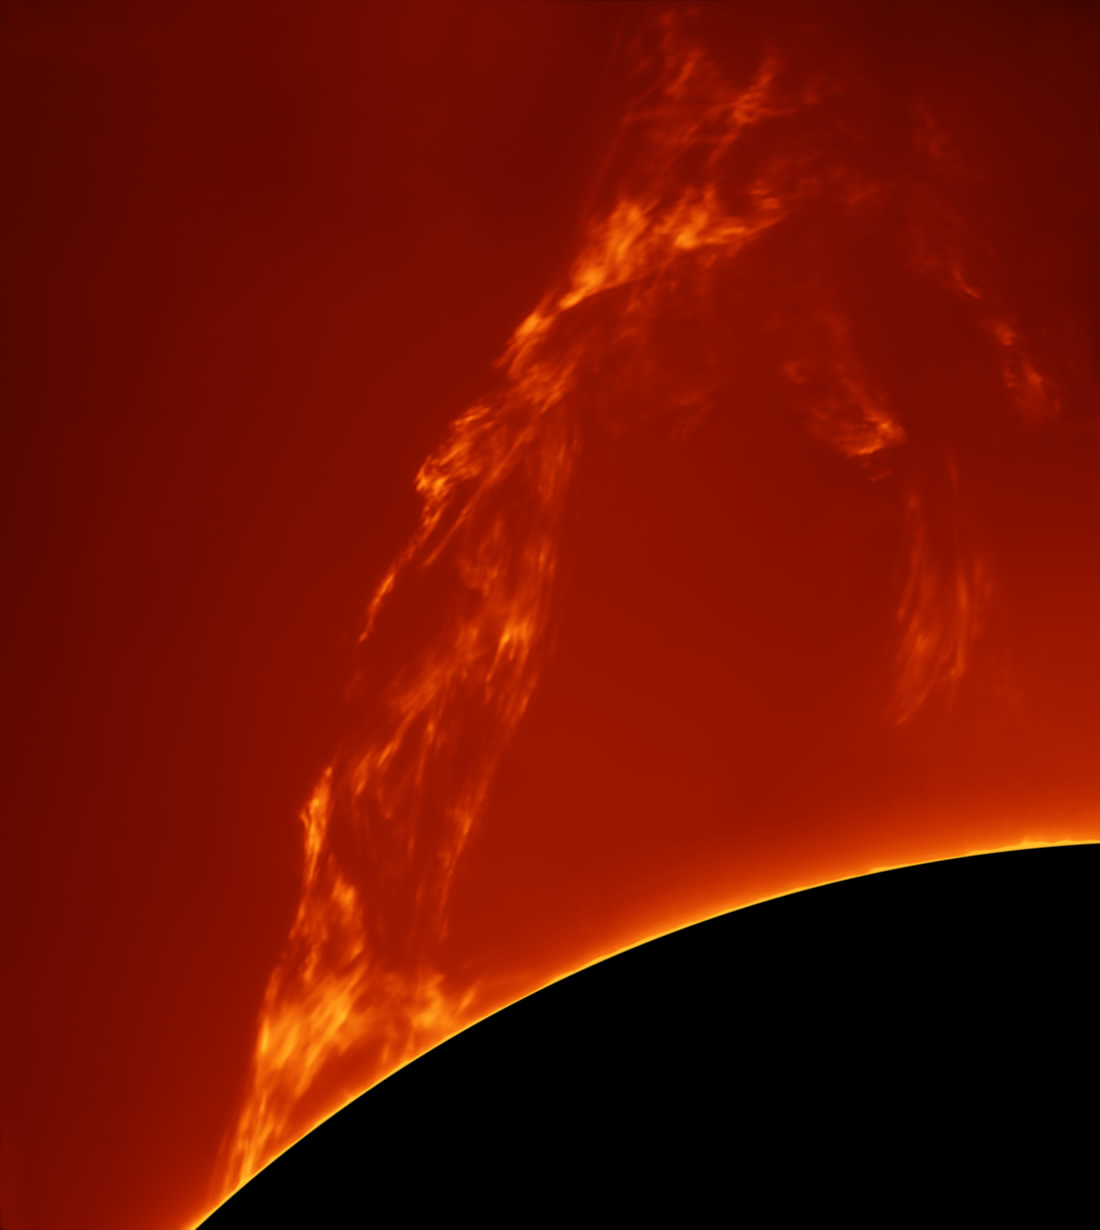 [2015 올해의 천문사진]우리의 태양(Our Sun) 부문 수상작. 태양에서 방출된 거대한 홍염.(이탈리아 Paolo Porcellana) / rmg.co.uk